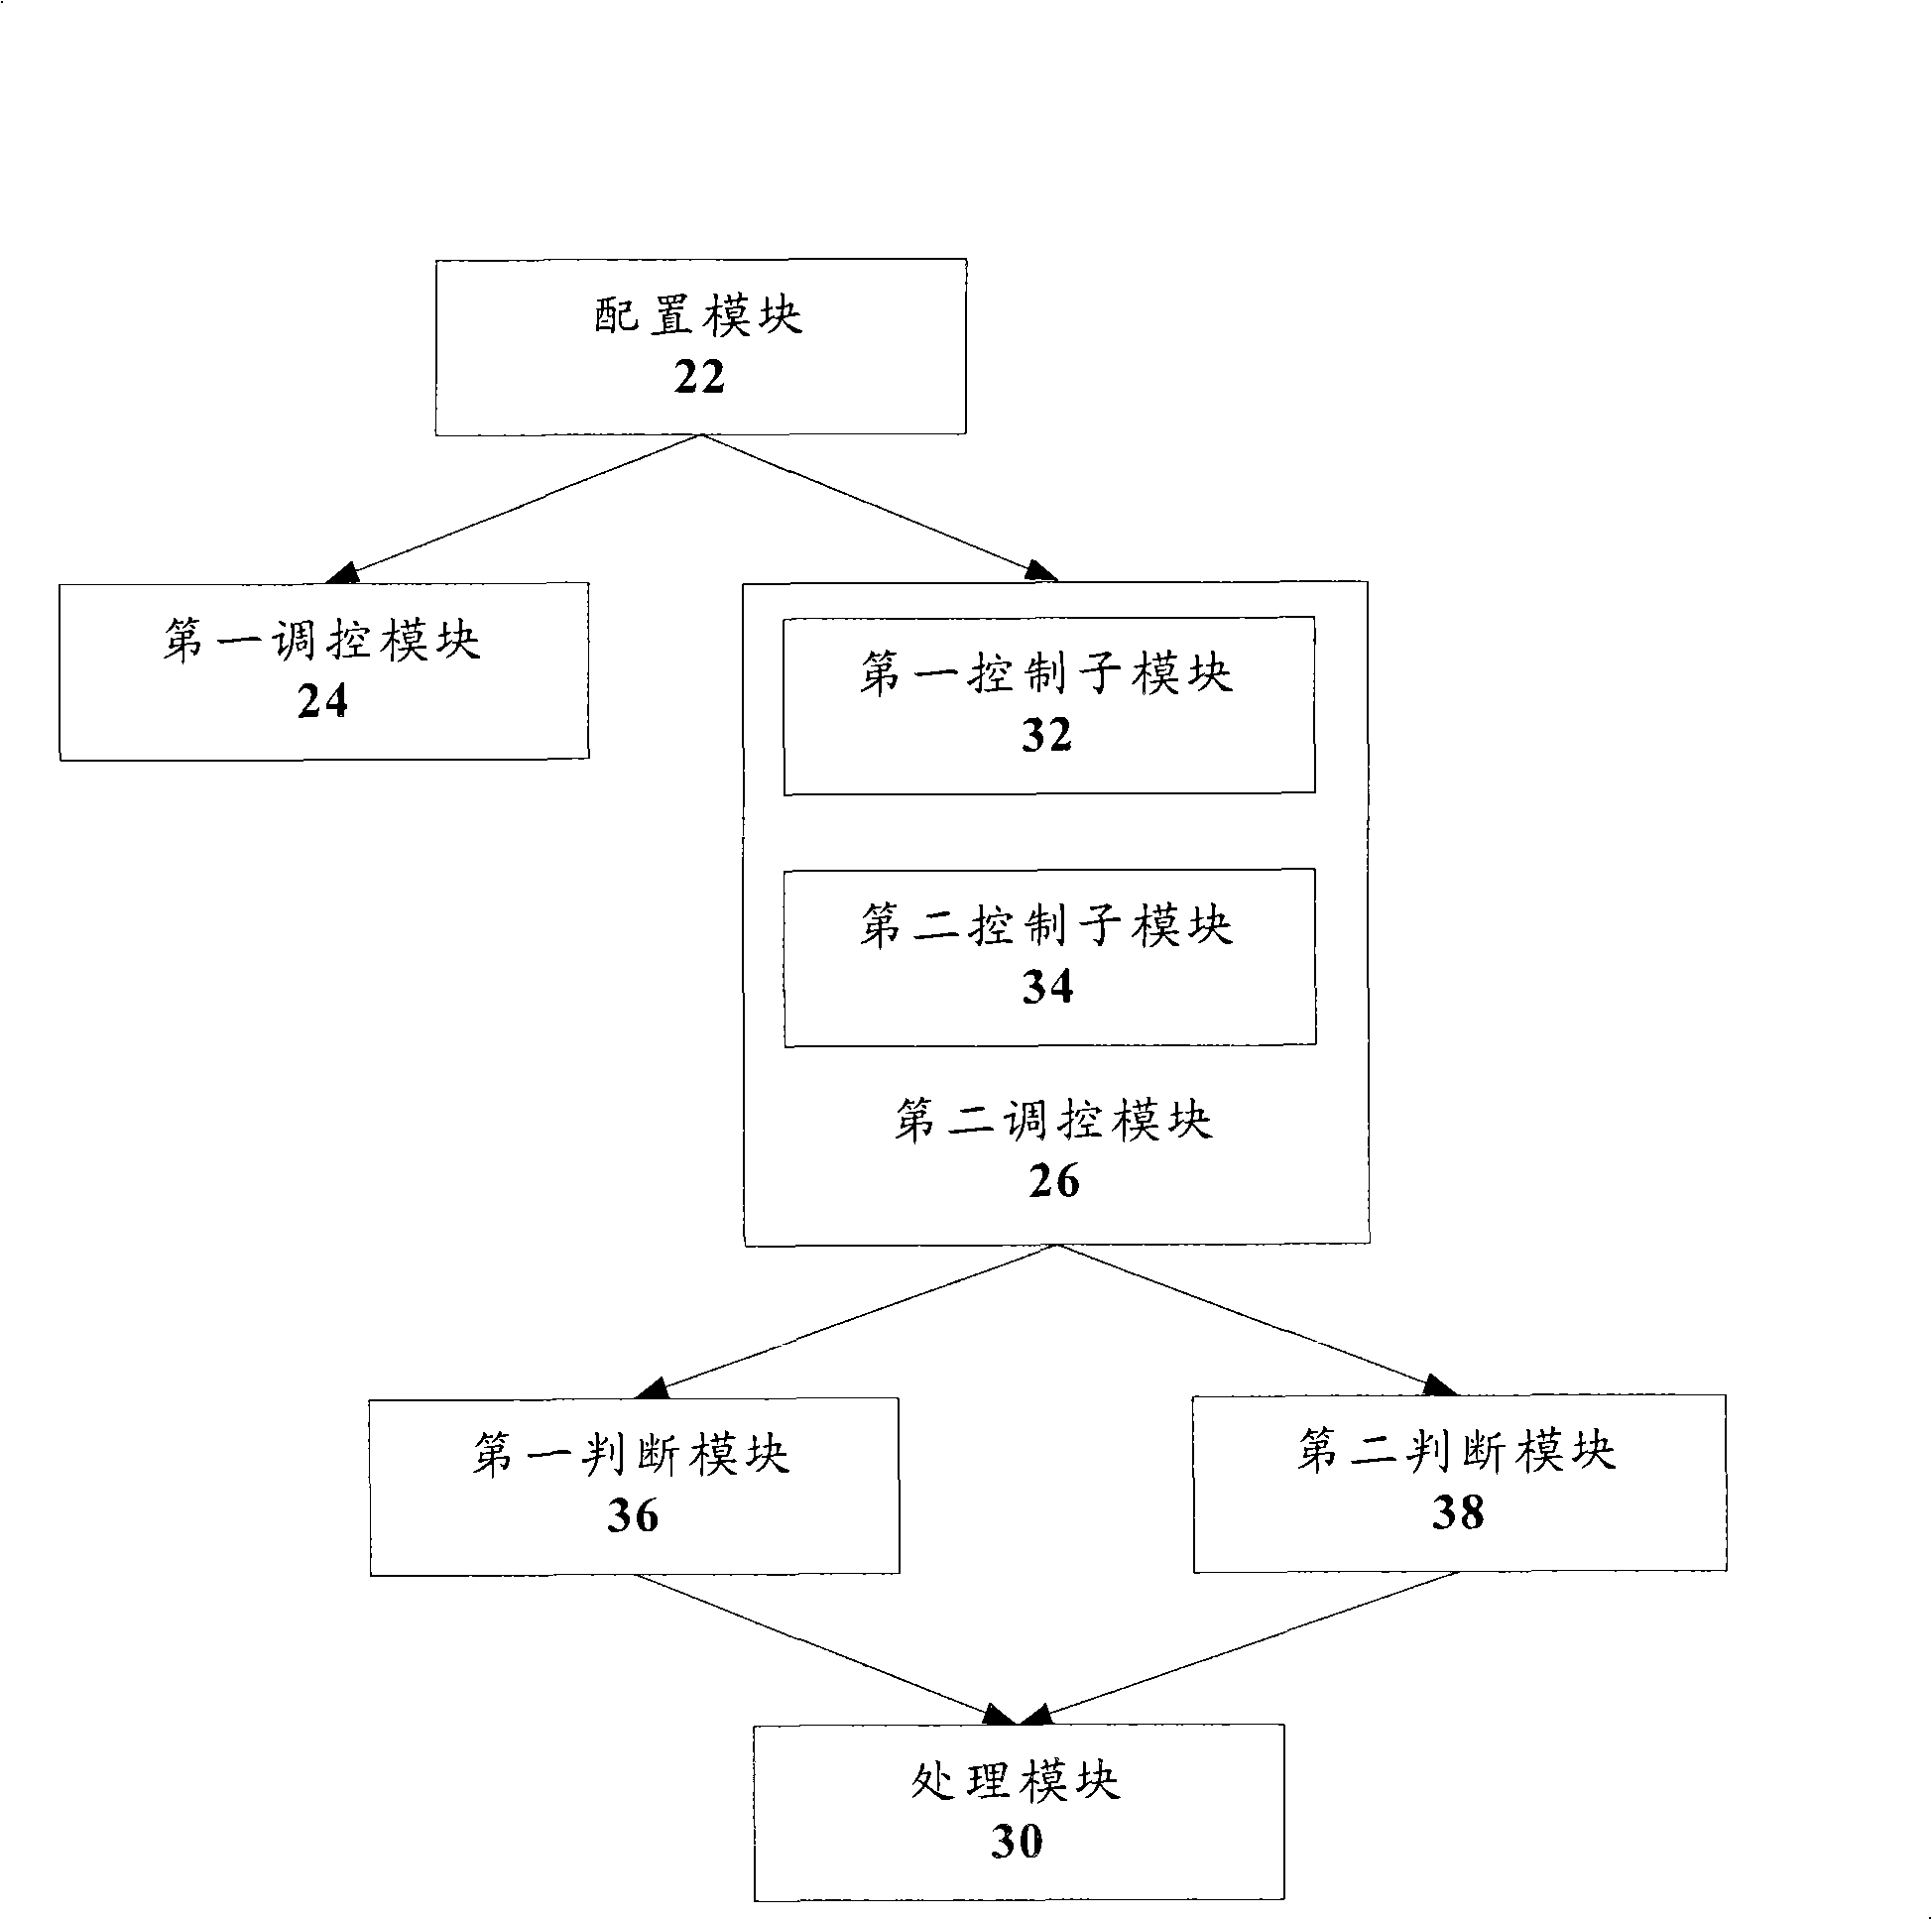 Method and apparatus for interrupting load equilibrium of multi-core processor